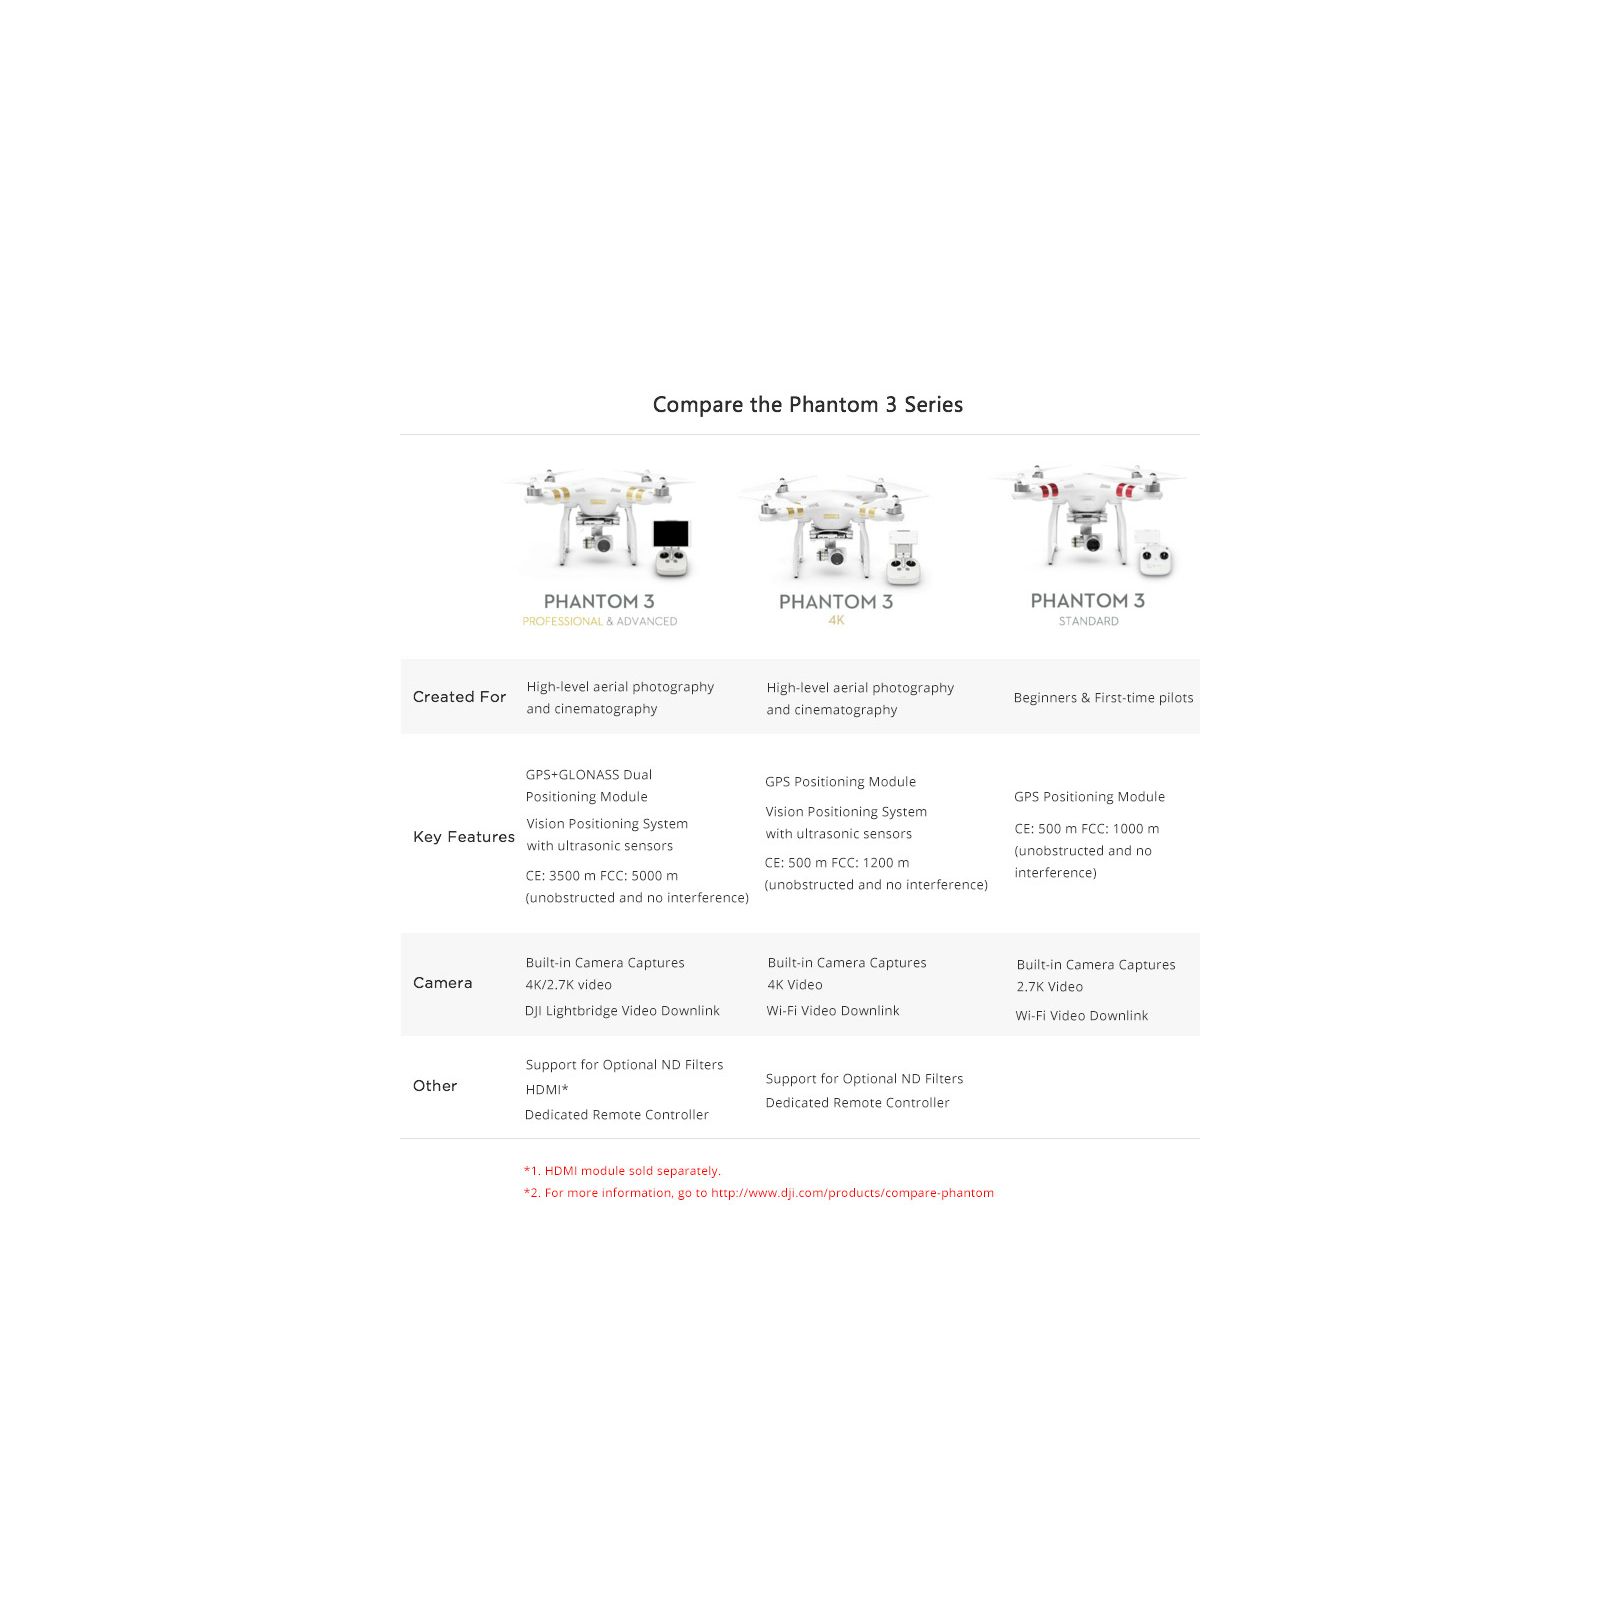 DJI Phantom 3 4K dron quadcopter + 4K kamera + 3D gimbal